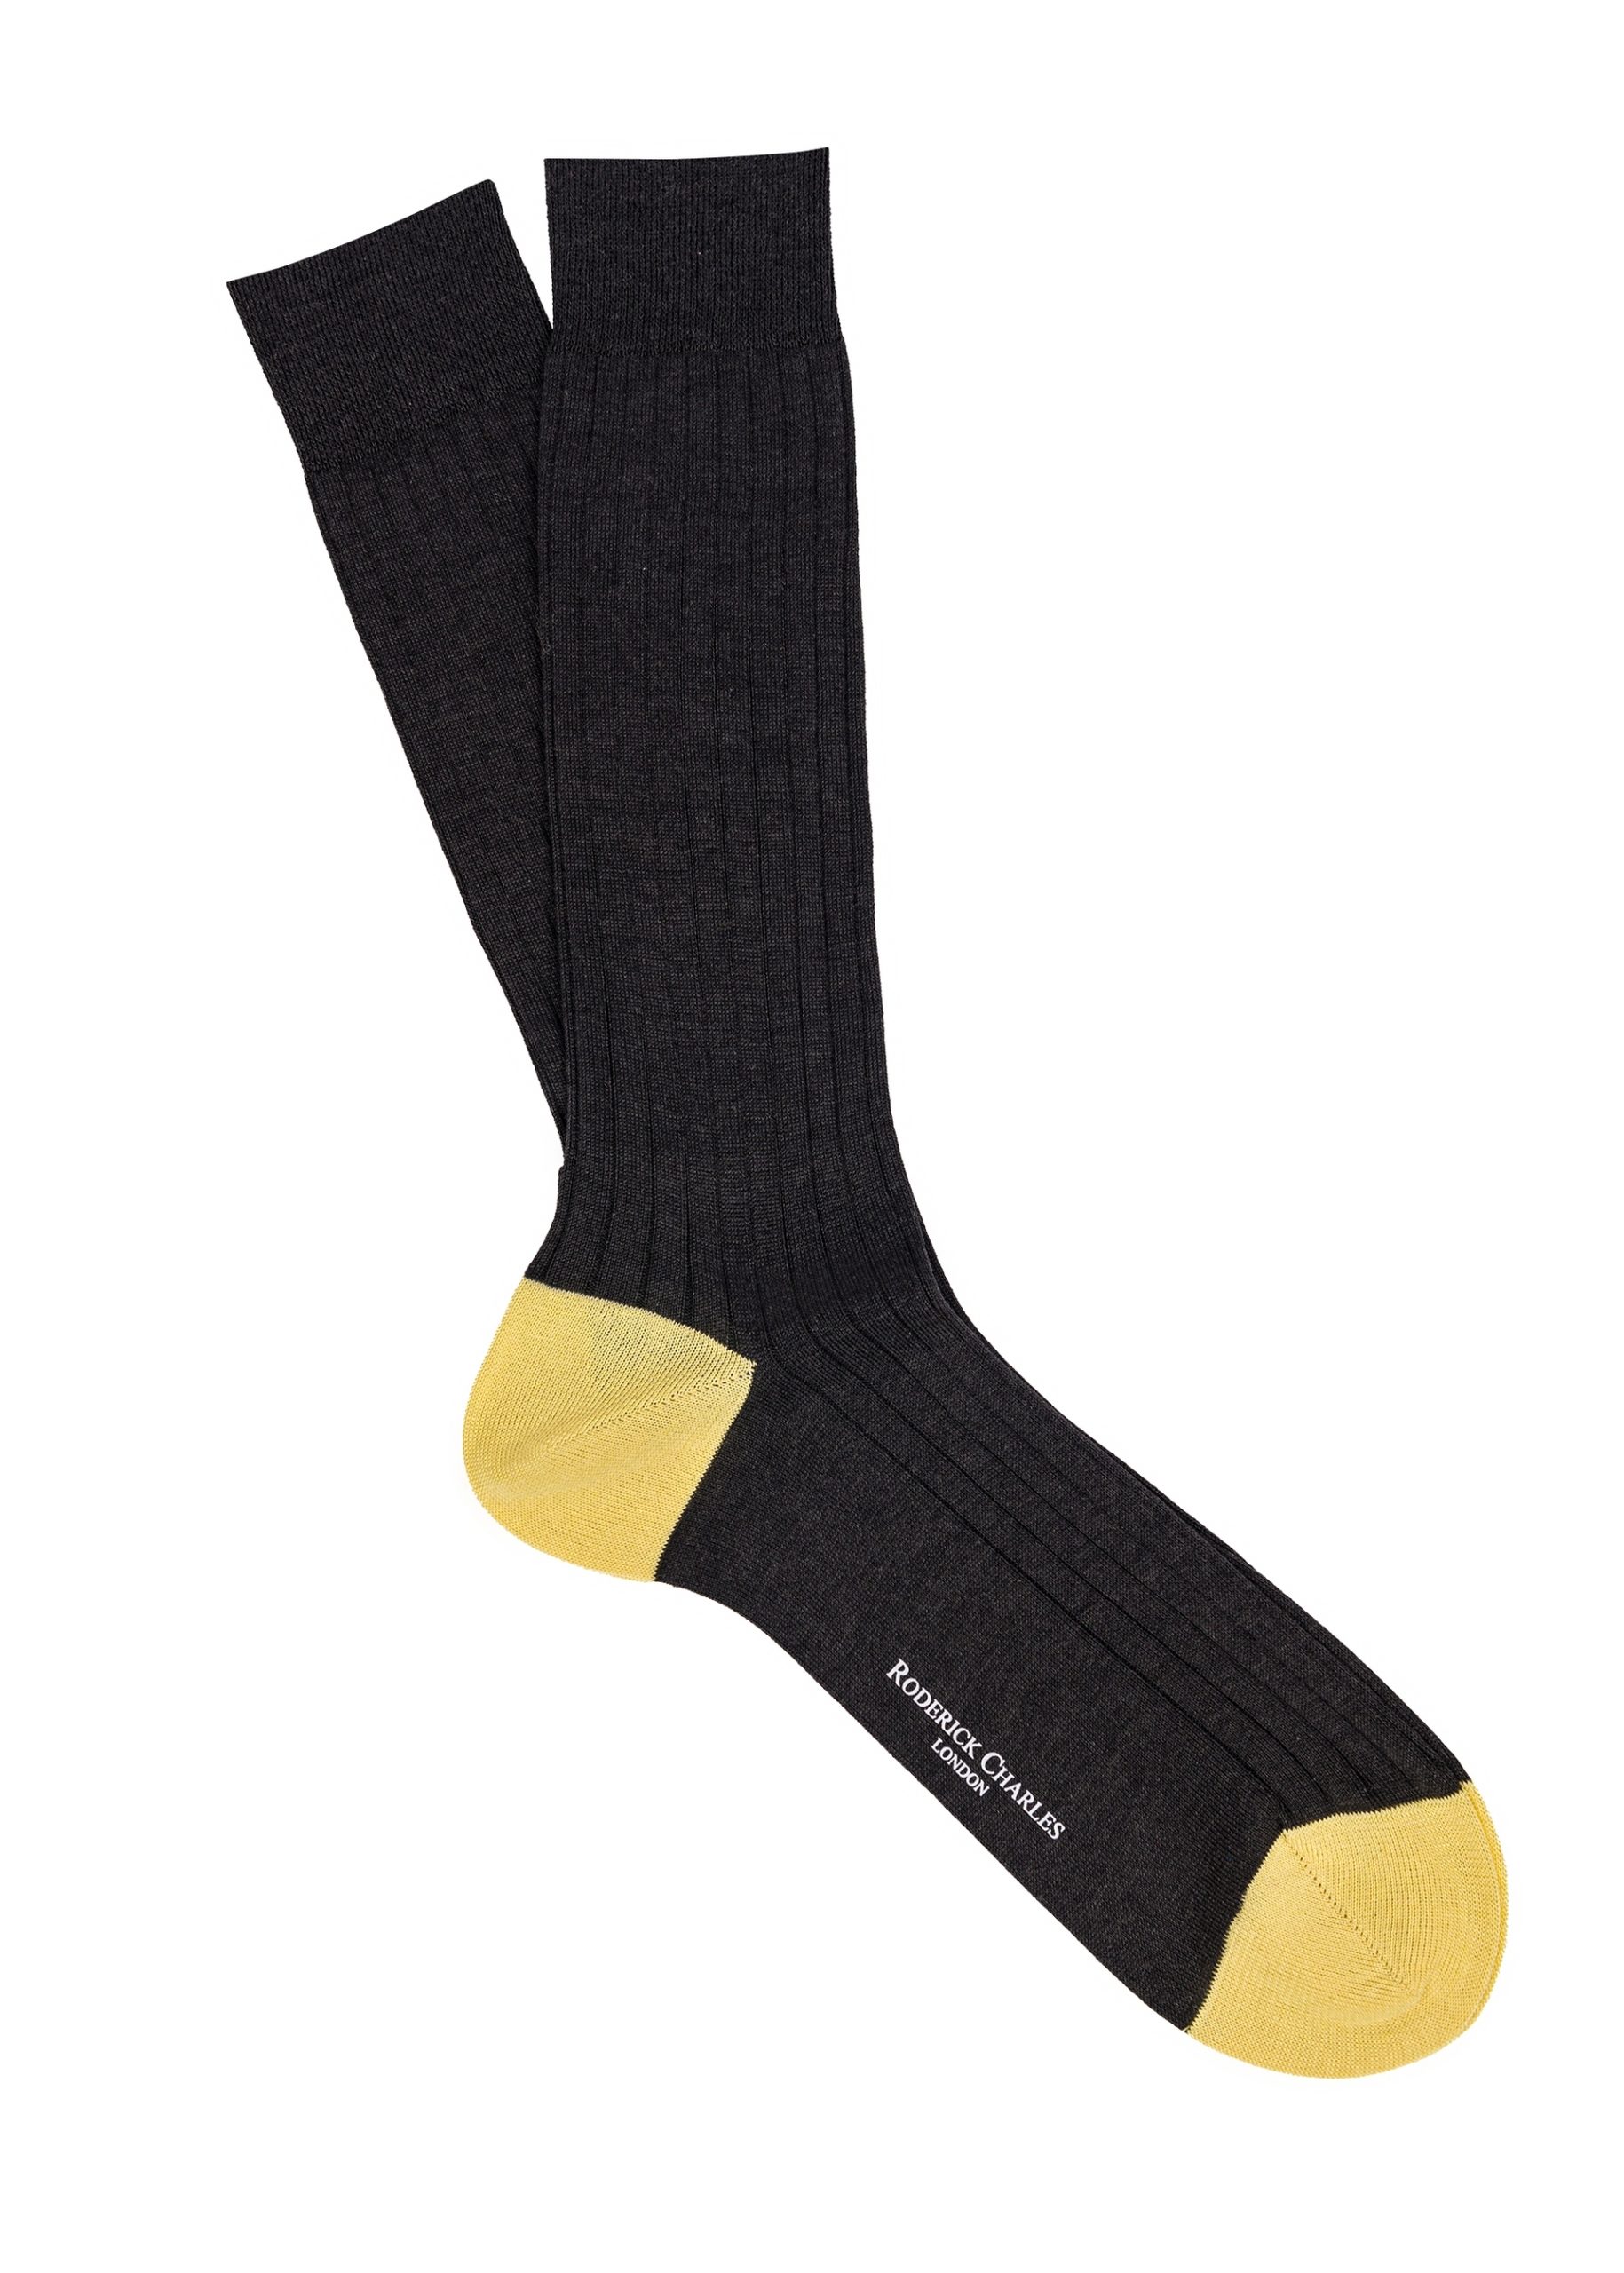 Roderick Charles yellow socks